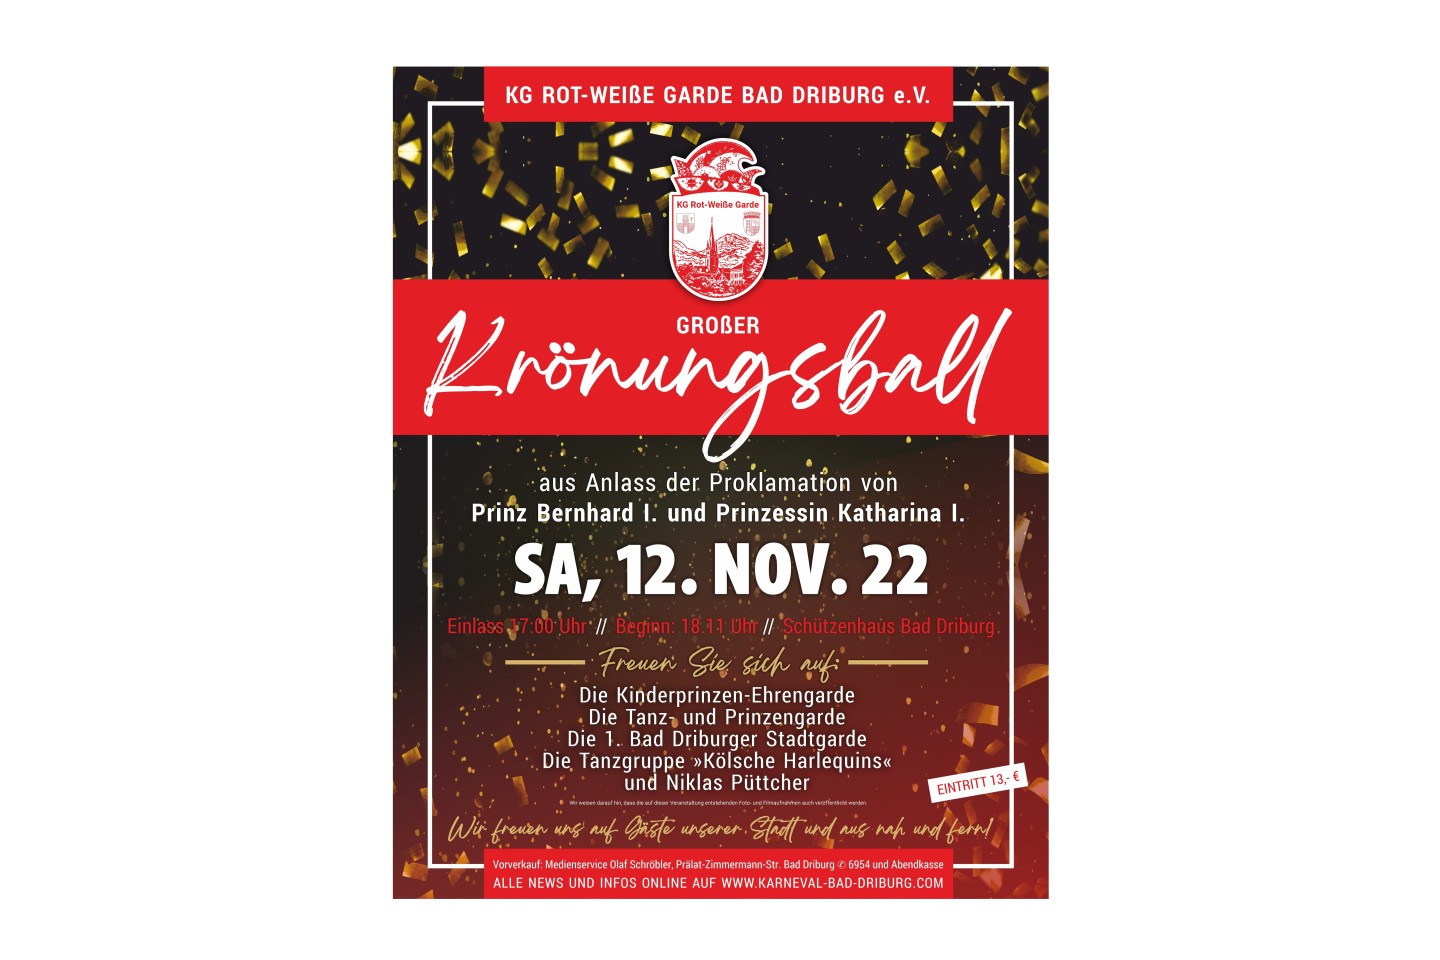 Großer Krönungsball am Samstag den 12.11.2022 ab 18.11 Uhr - Einlass ab 17.00 Uhr